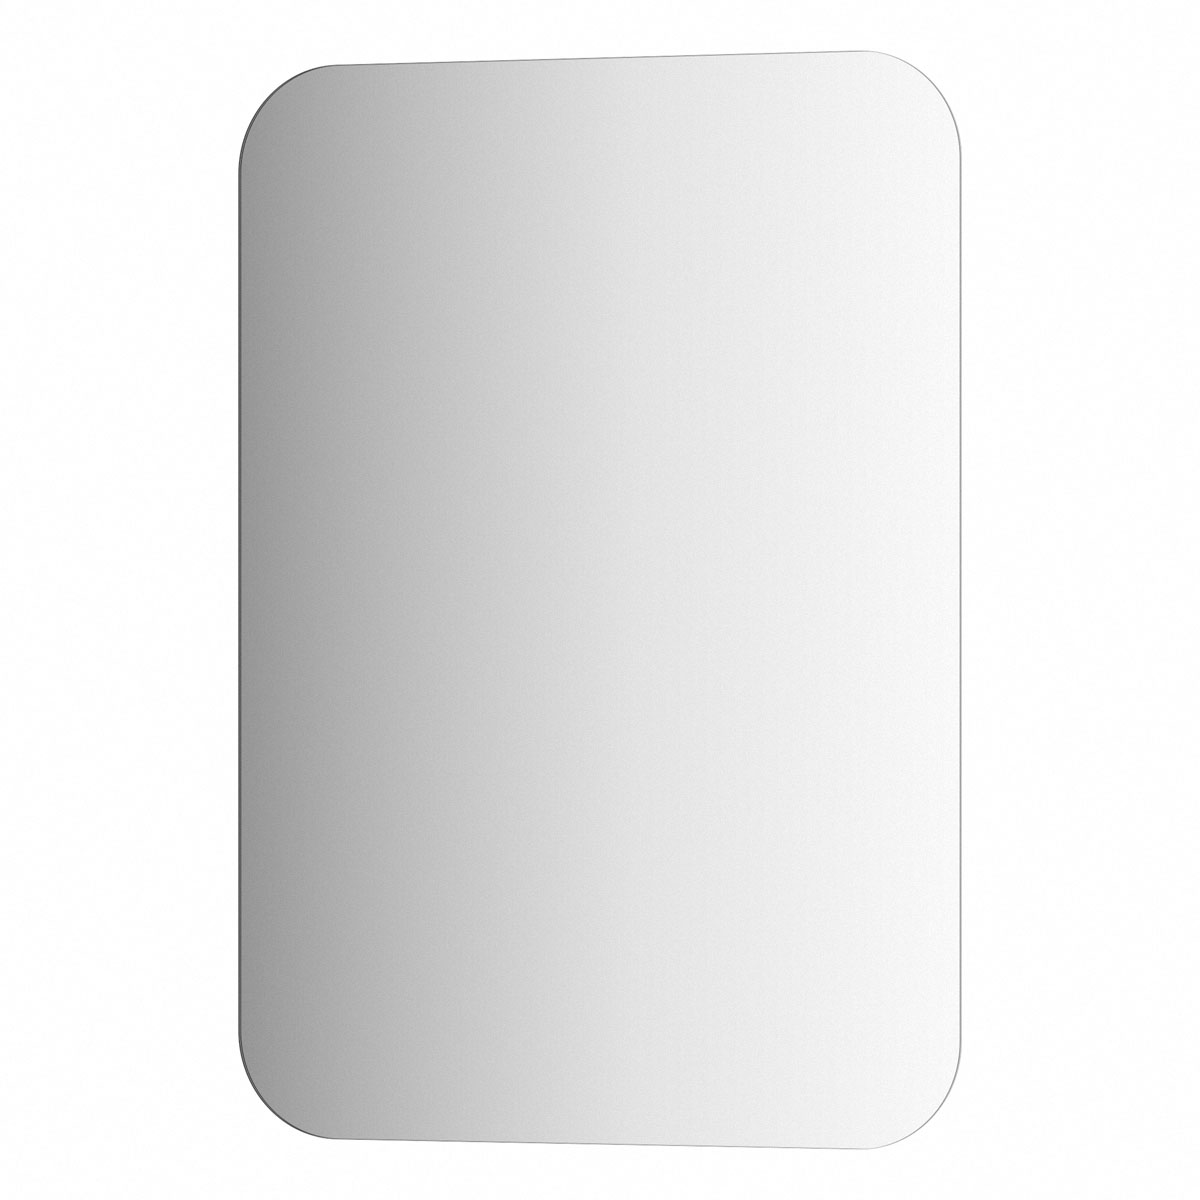 Зеркало настенное EDGE EVOFORM 50х70 см, SP 9873 настенное зеркало аврора белый античный зеркало